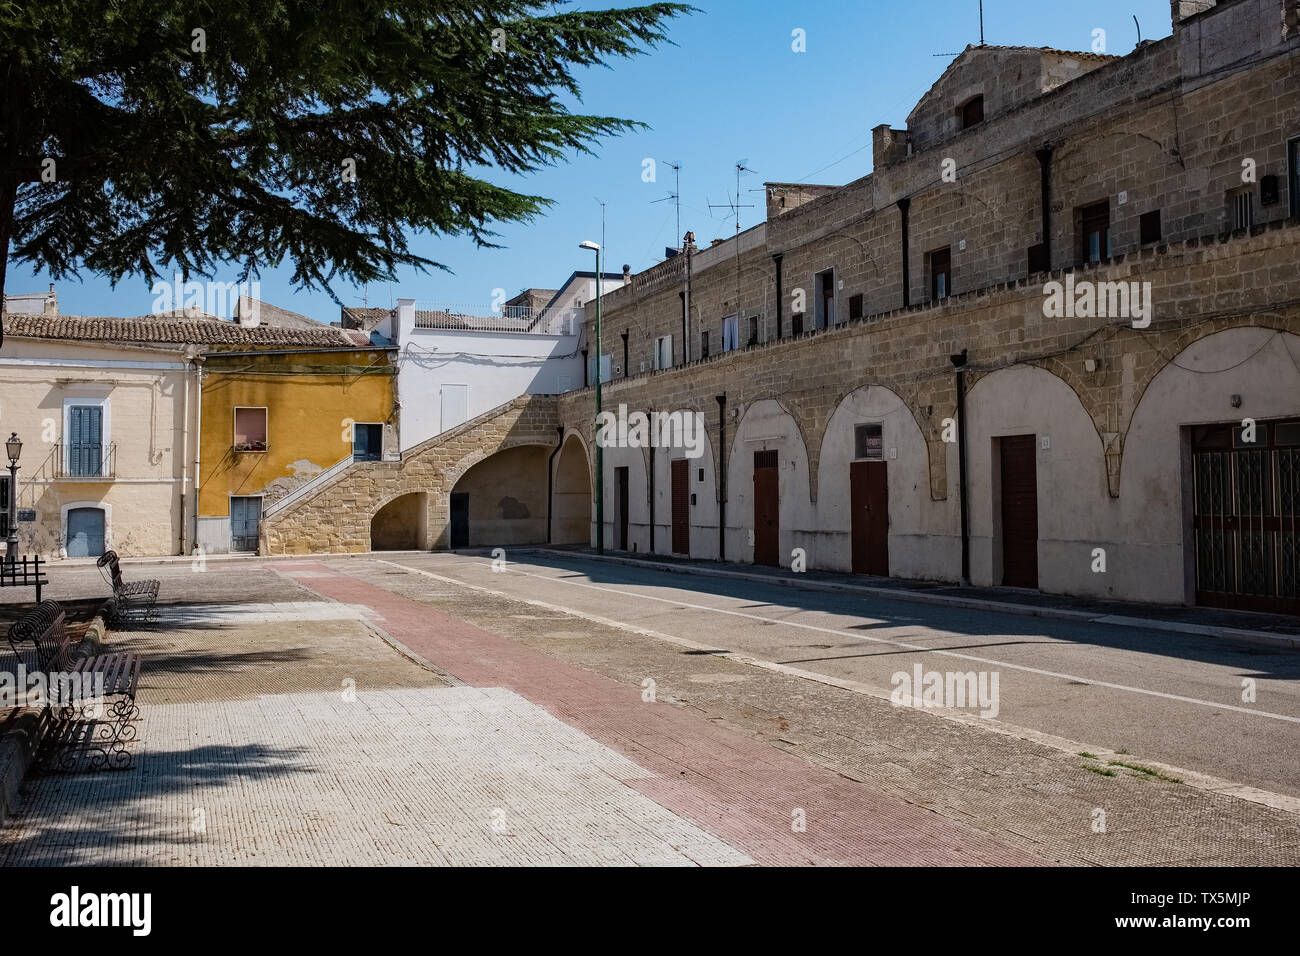 Empty square in a hot summer day. Poggiorsini, Apulia region, Italy Stock Photo